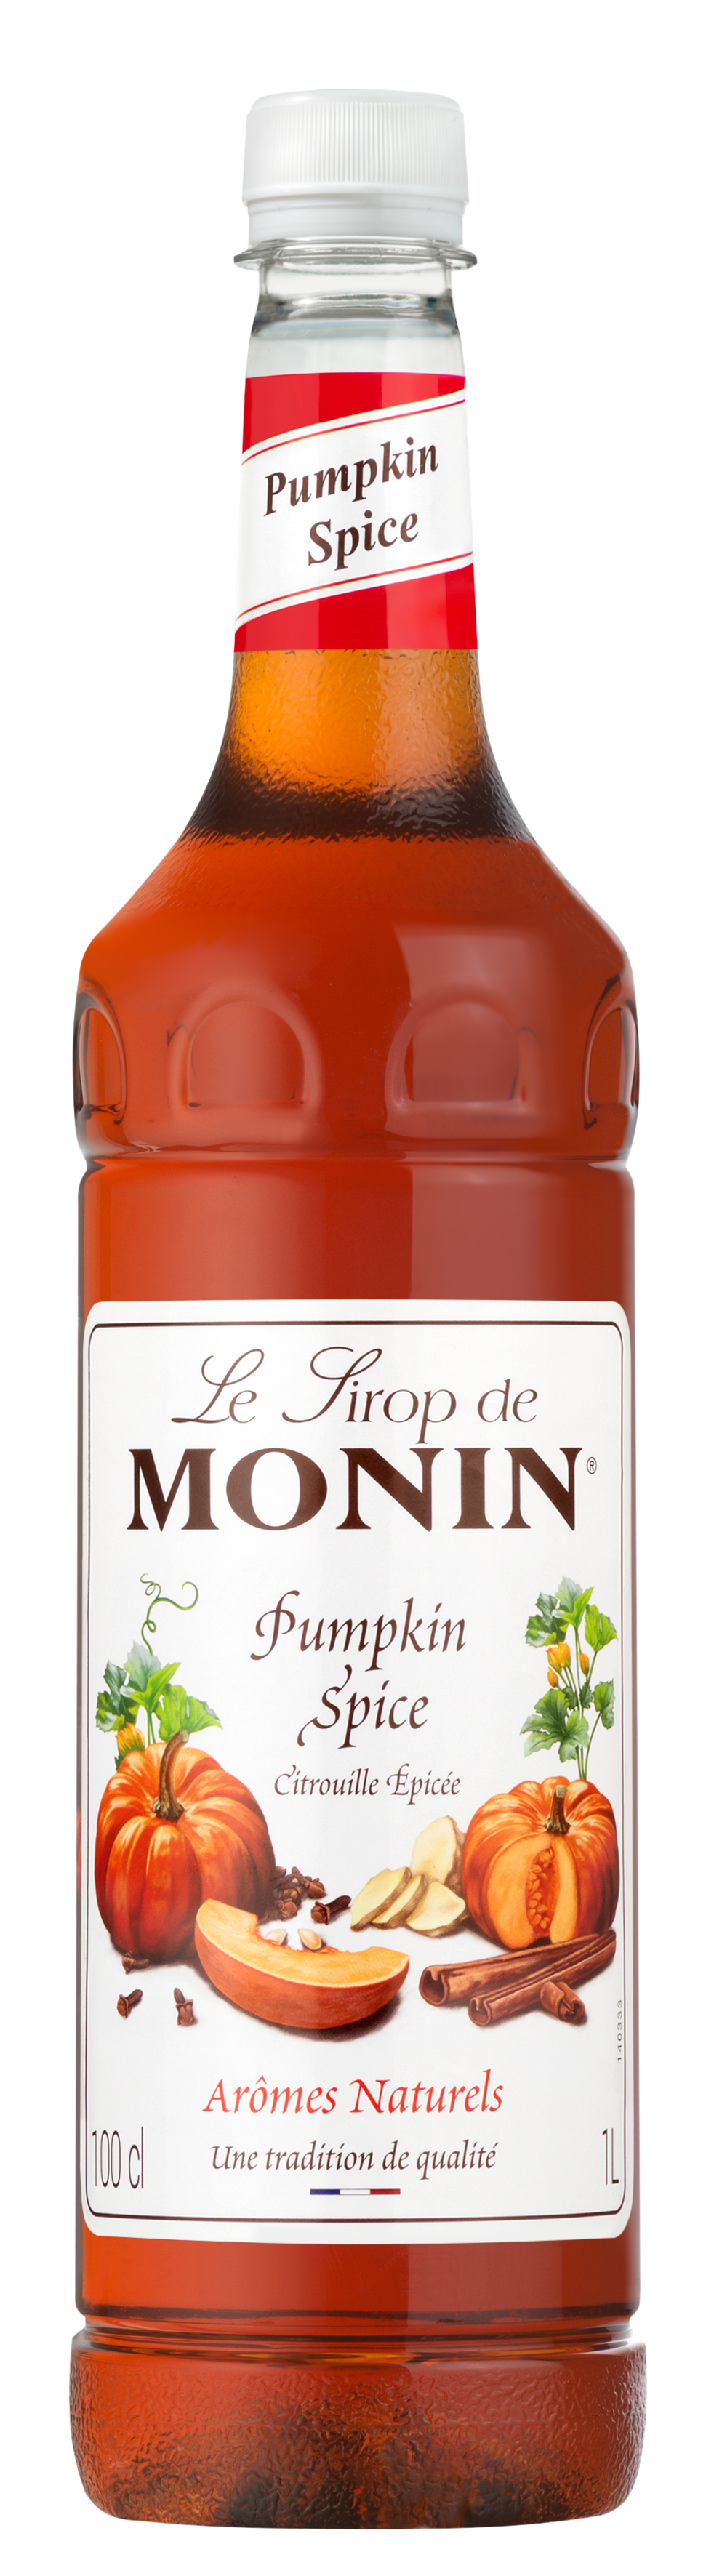 Monin - Pumpkin Spice Syrup - (1L Bottle) // Stores Supply // MONIN